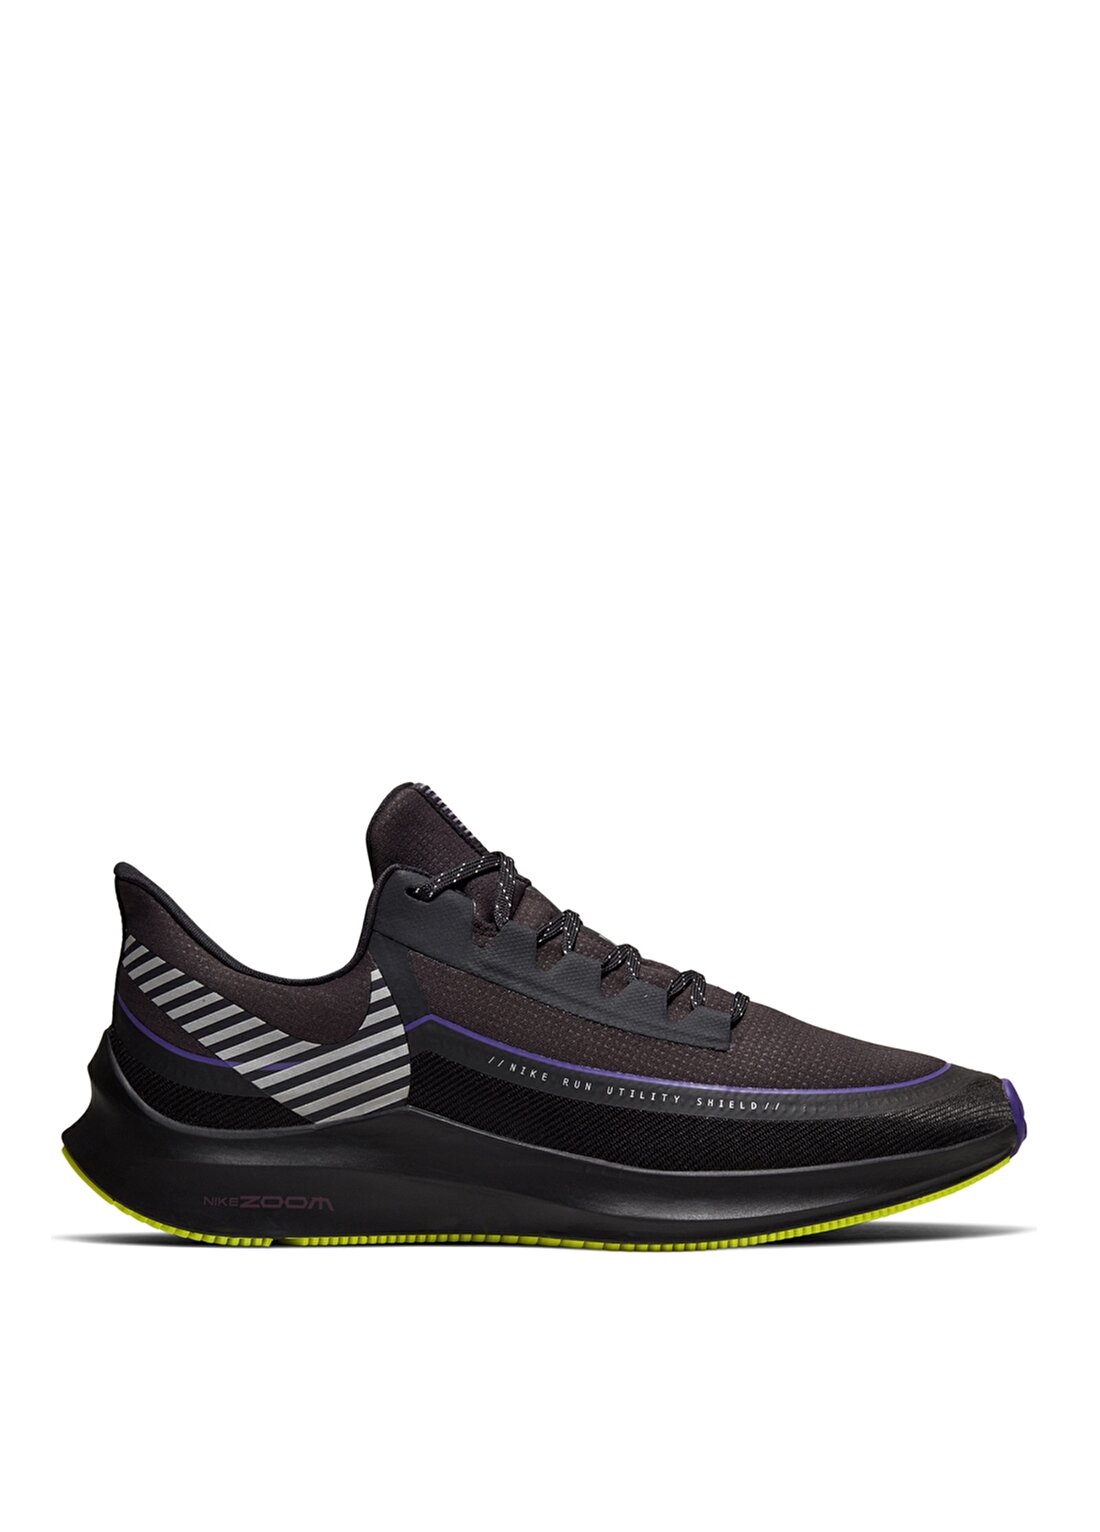 Nike Air Zoom Winflo 6 Erkek Koşu Ayakkabısı